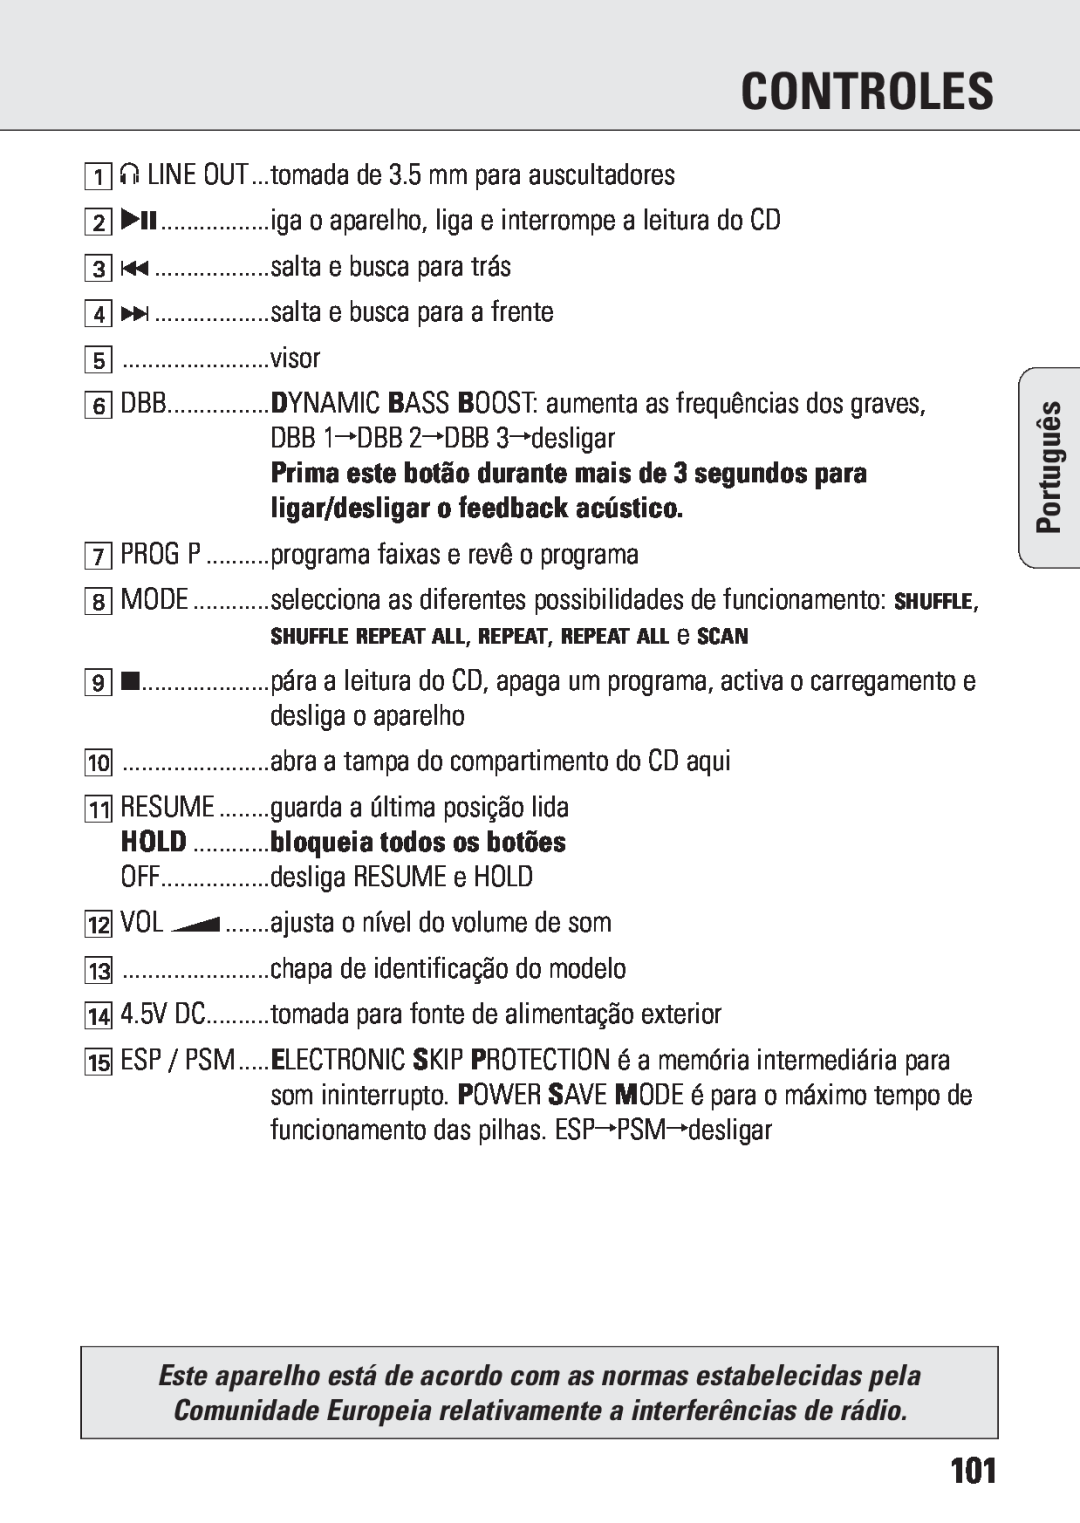 Philips ACT 7583 manual ligar/desligar o feedback acústico, Controles, Português 